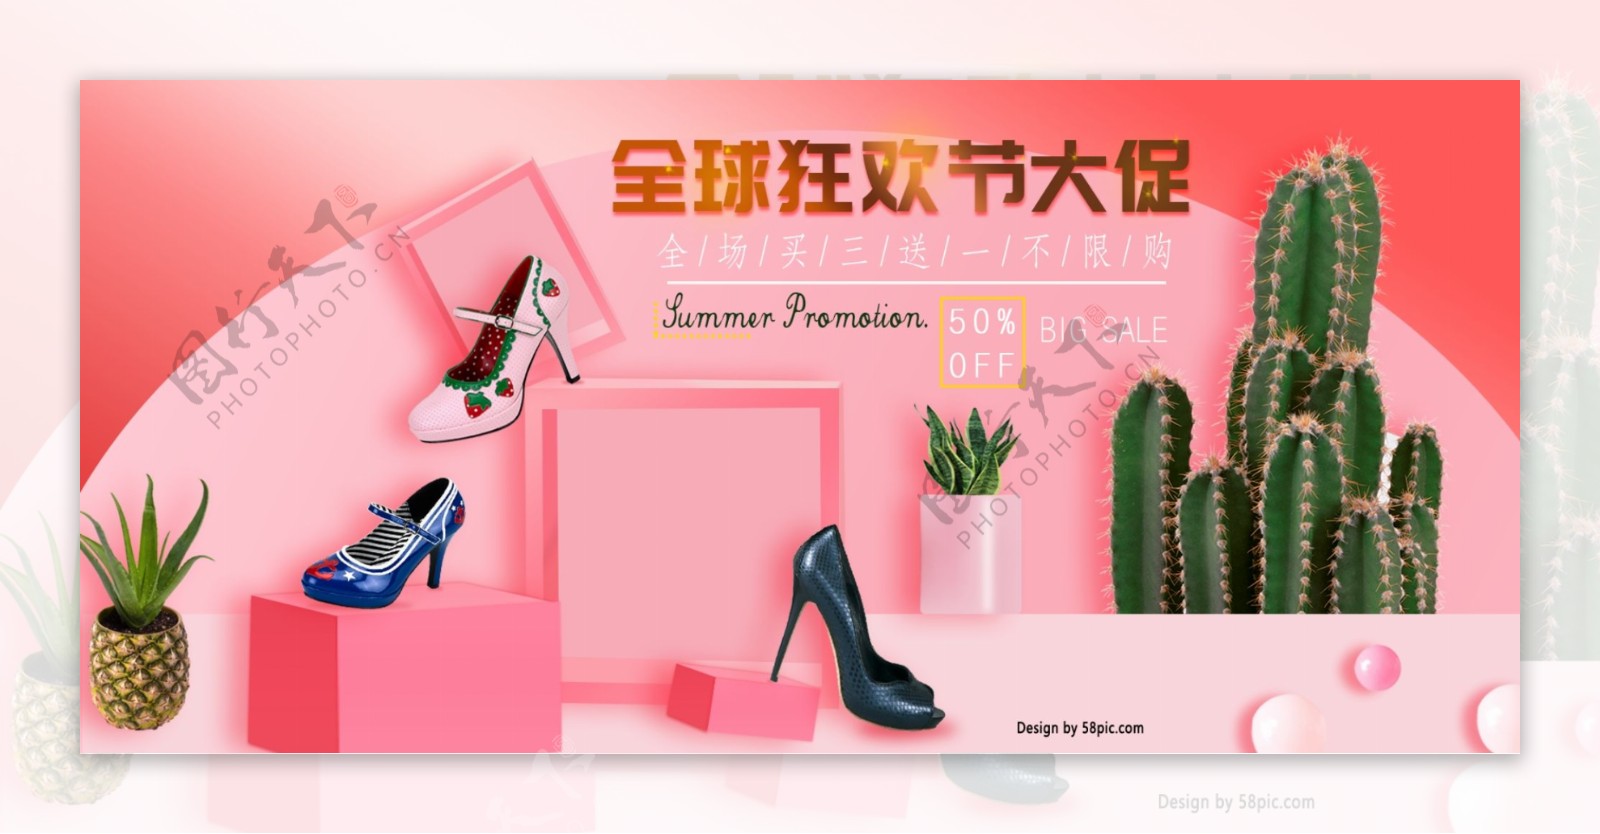 全球狂欢节大促粉色浪漫女鞋类目海报